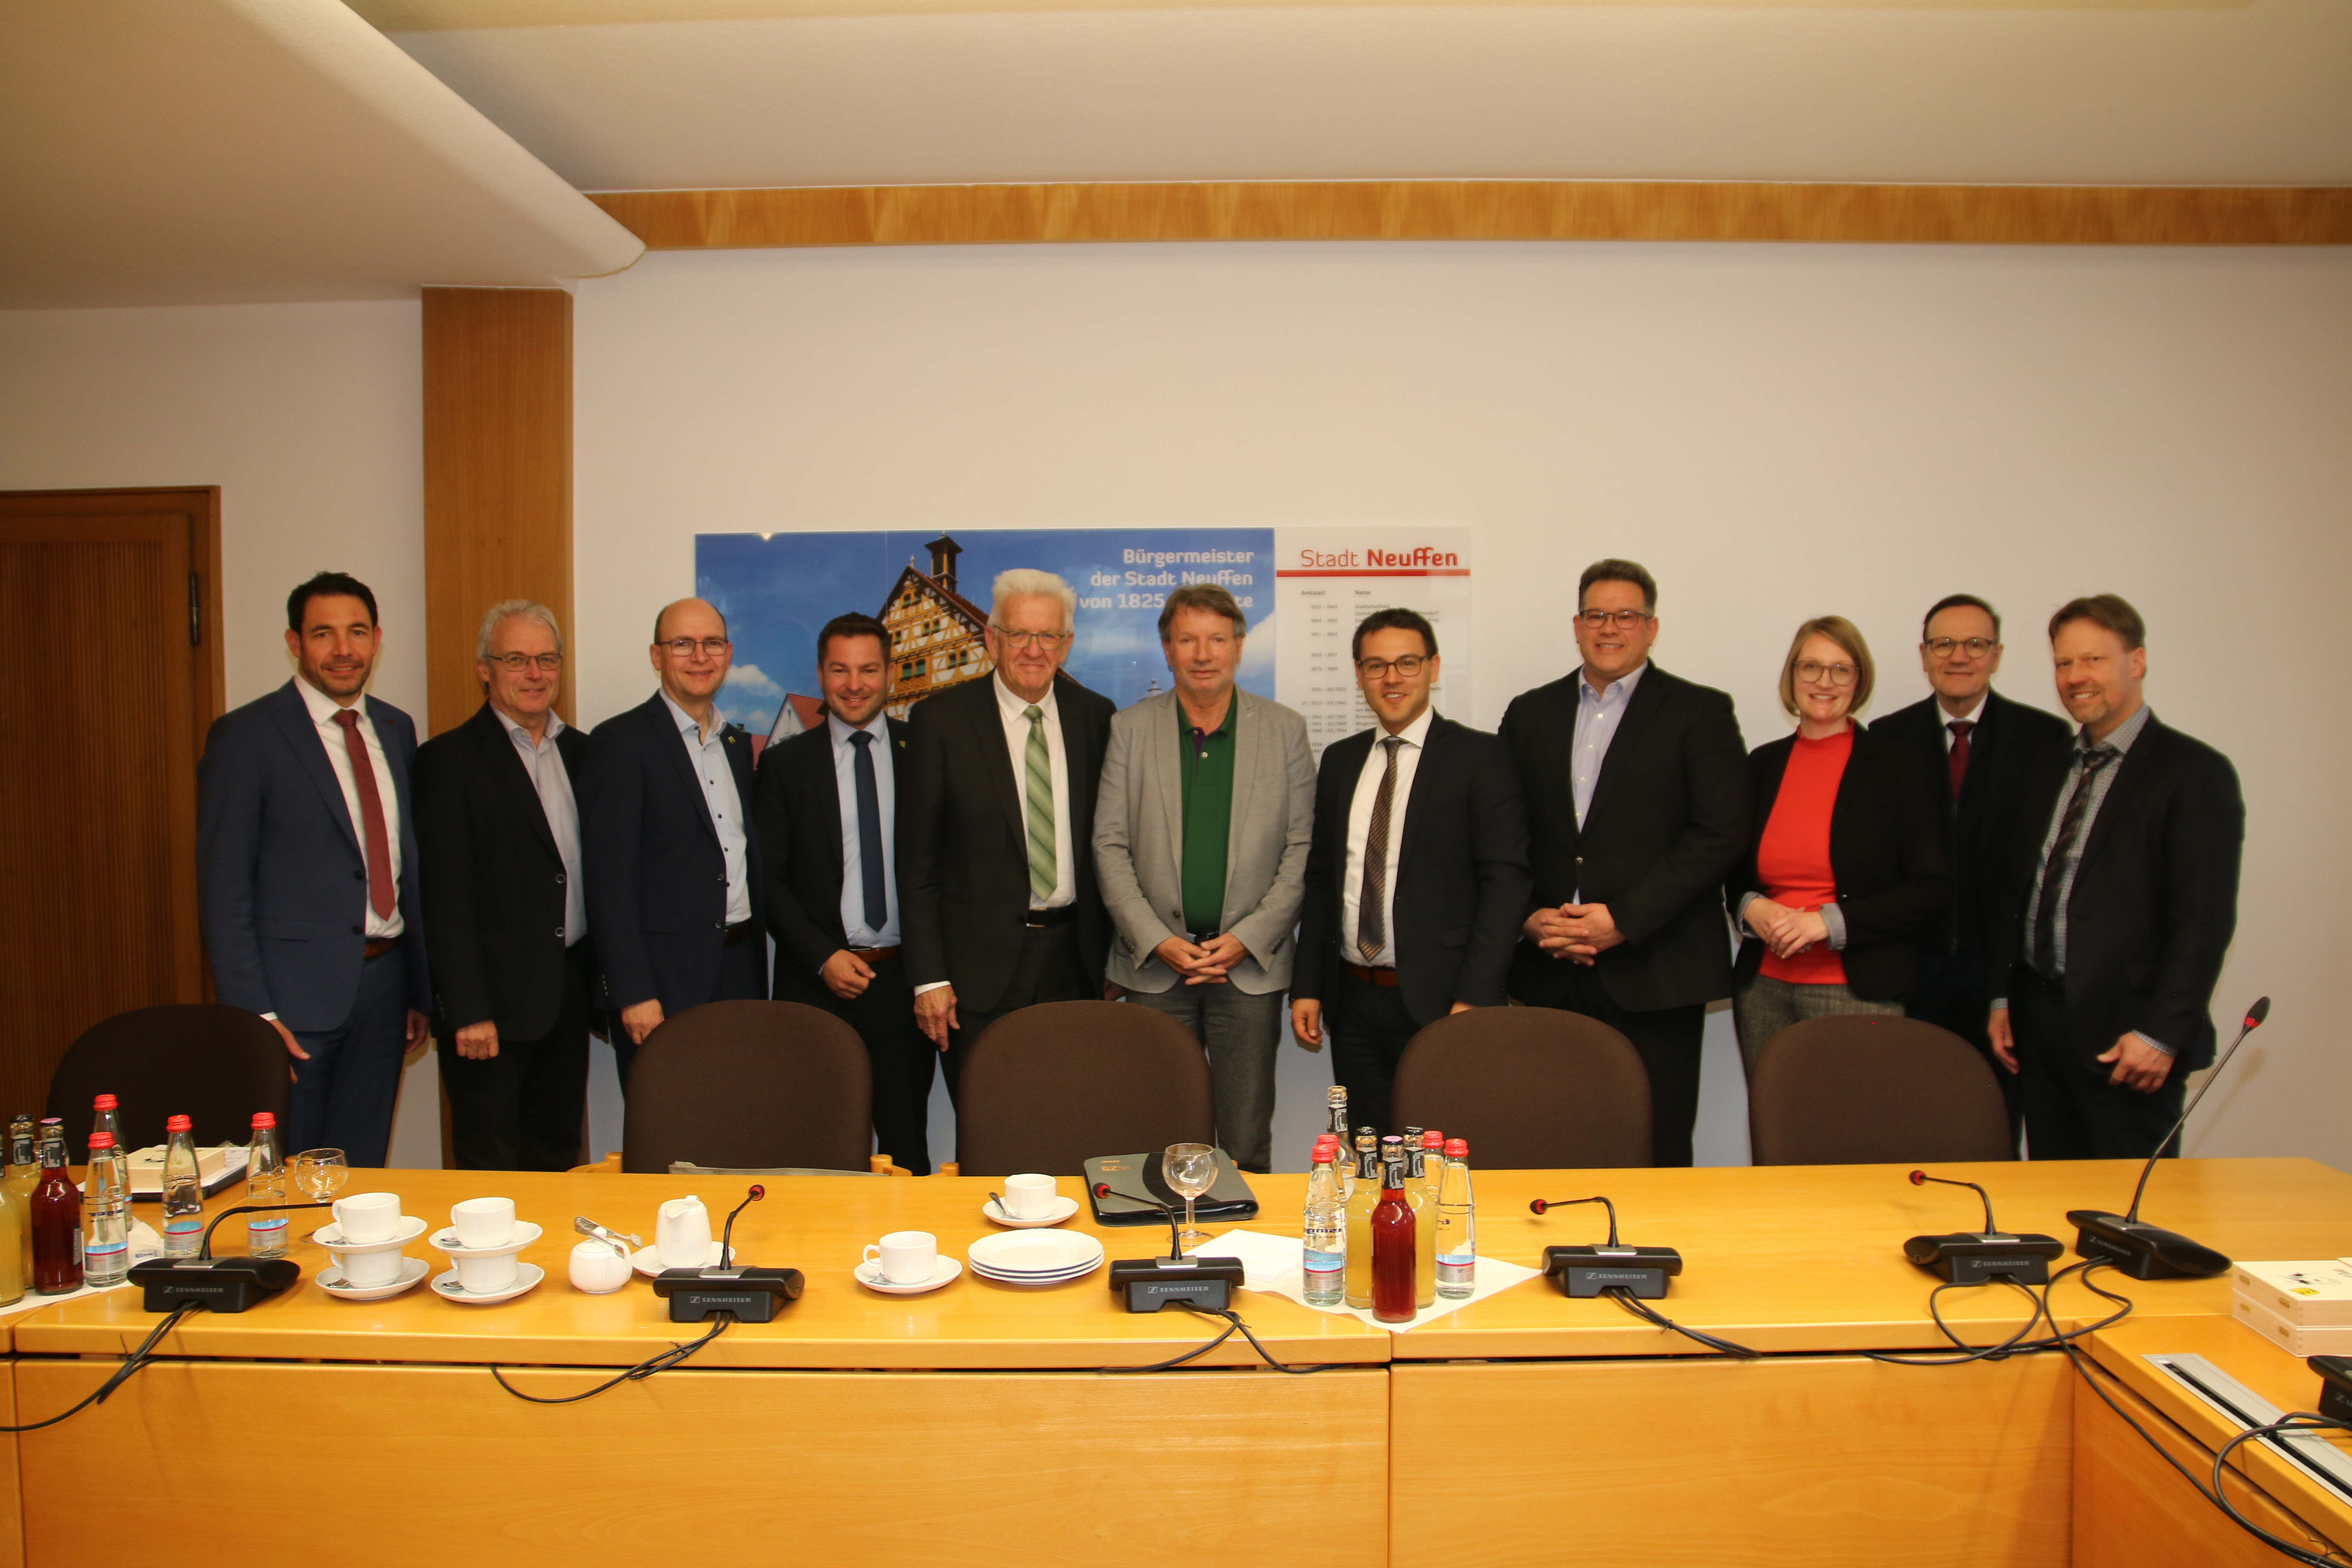  Gruppenbild mit MP Kretschmann und den Bürgermeistern 